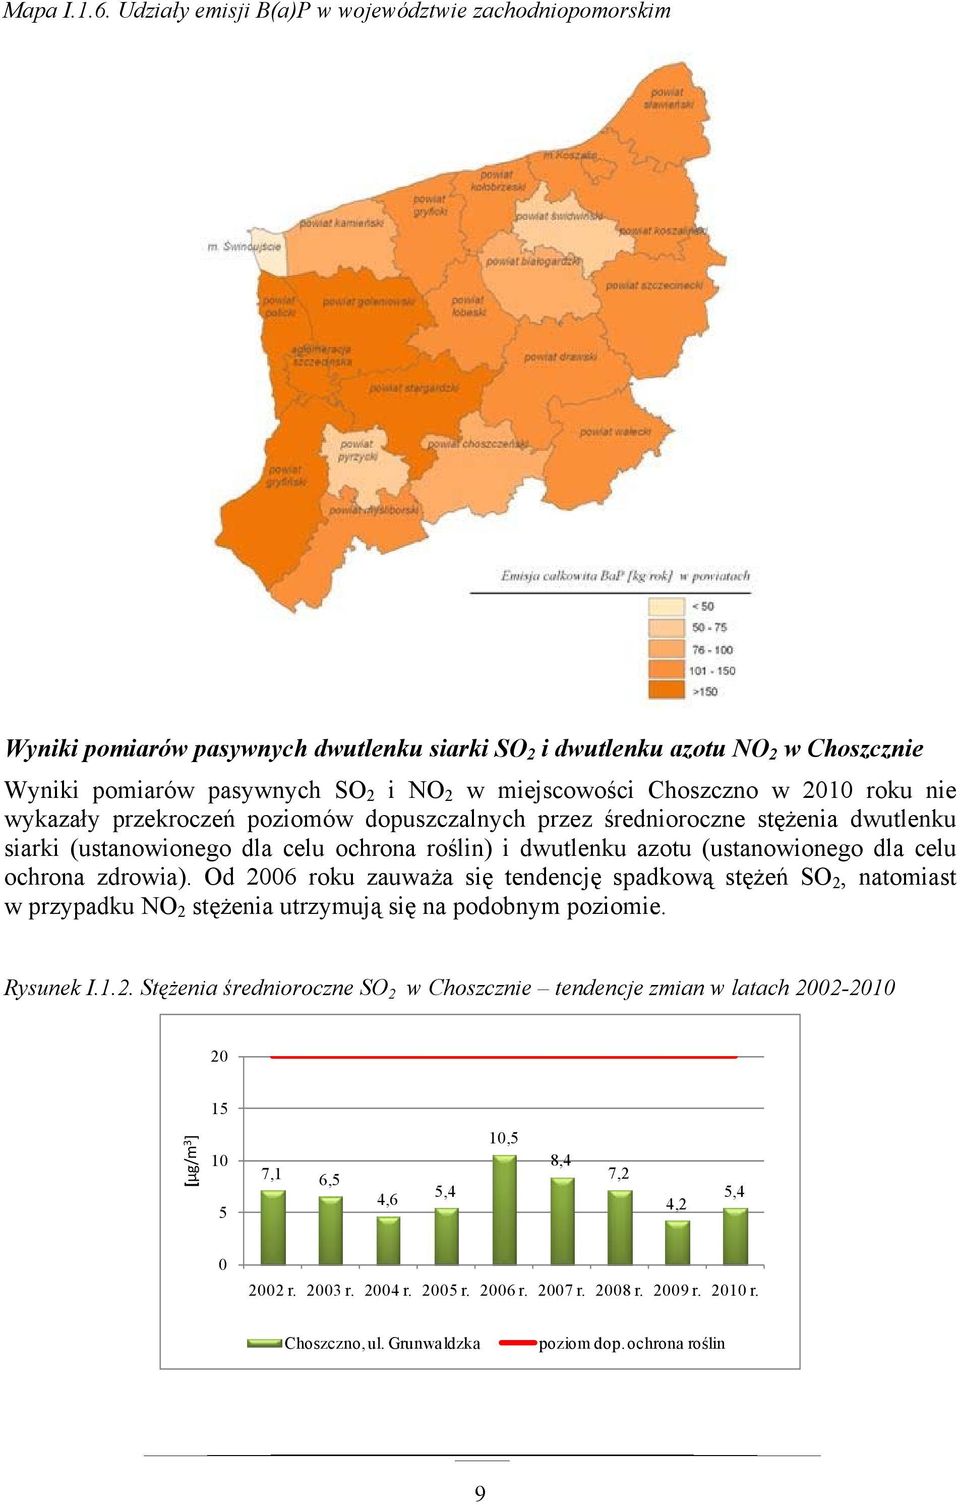 Choszczno w 2010 roku nie wykazały przekroczeń poziomów dopuszczalnych przez średnioroczne stężenia dwutlenku siarki (ustanowionego dla celu ochrona roślin) i dwutlenku azotu (ustanowionego dla celu